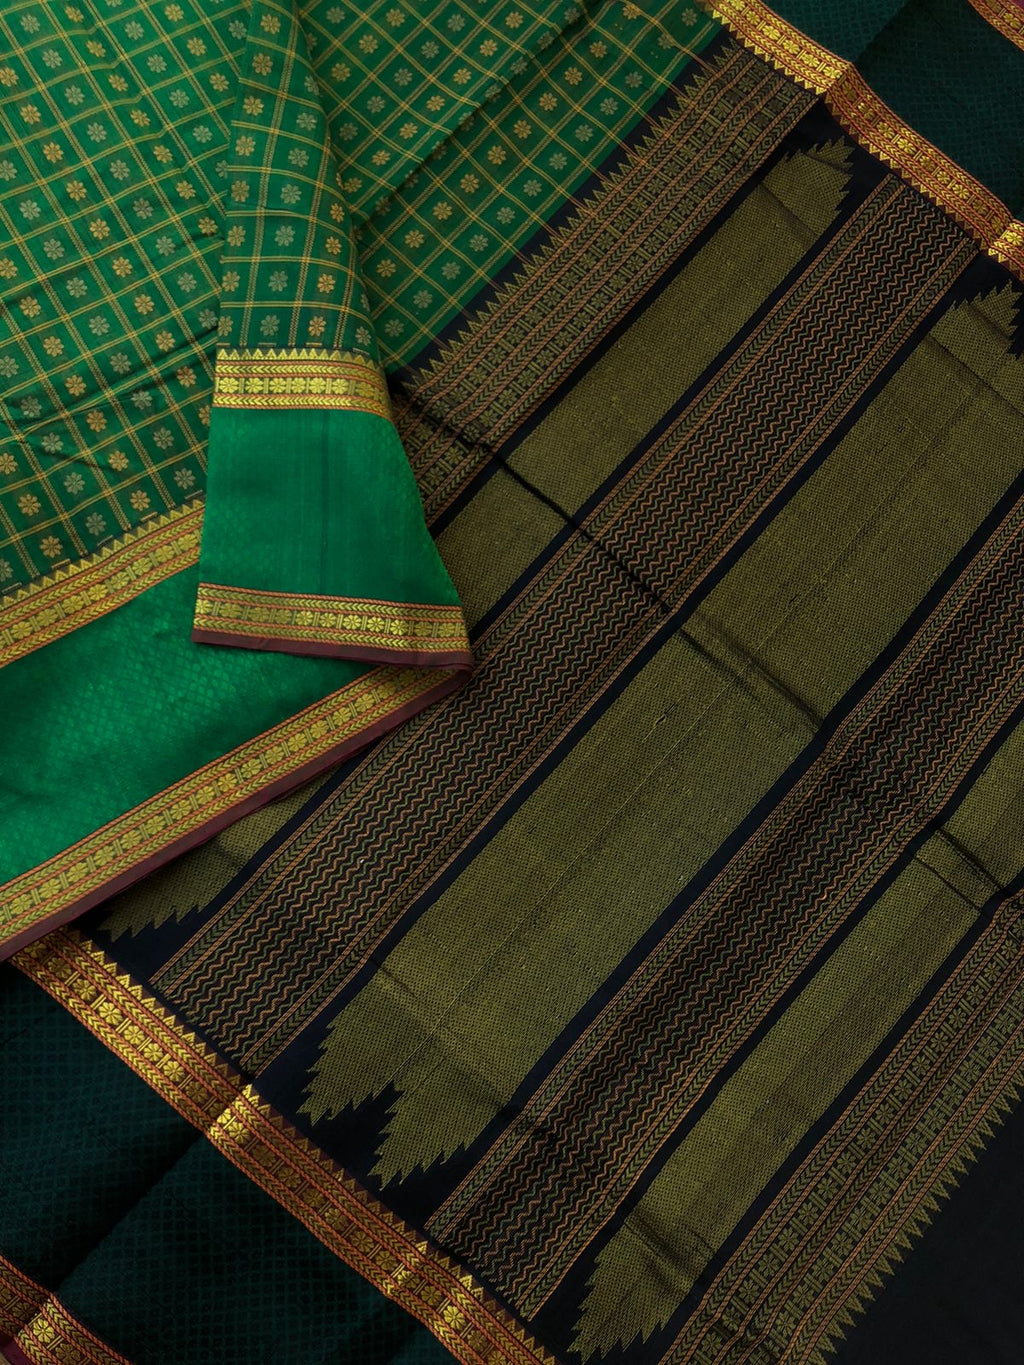 Woven Motifs Silk Cotton - deep Meenakshi green and black 1000 buttas